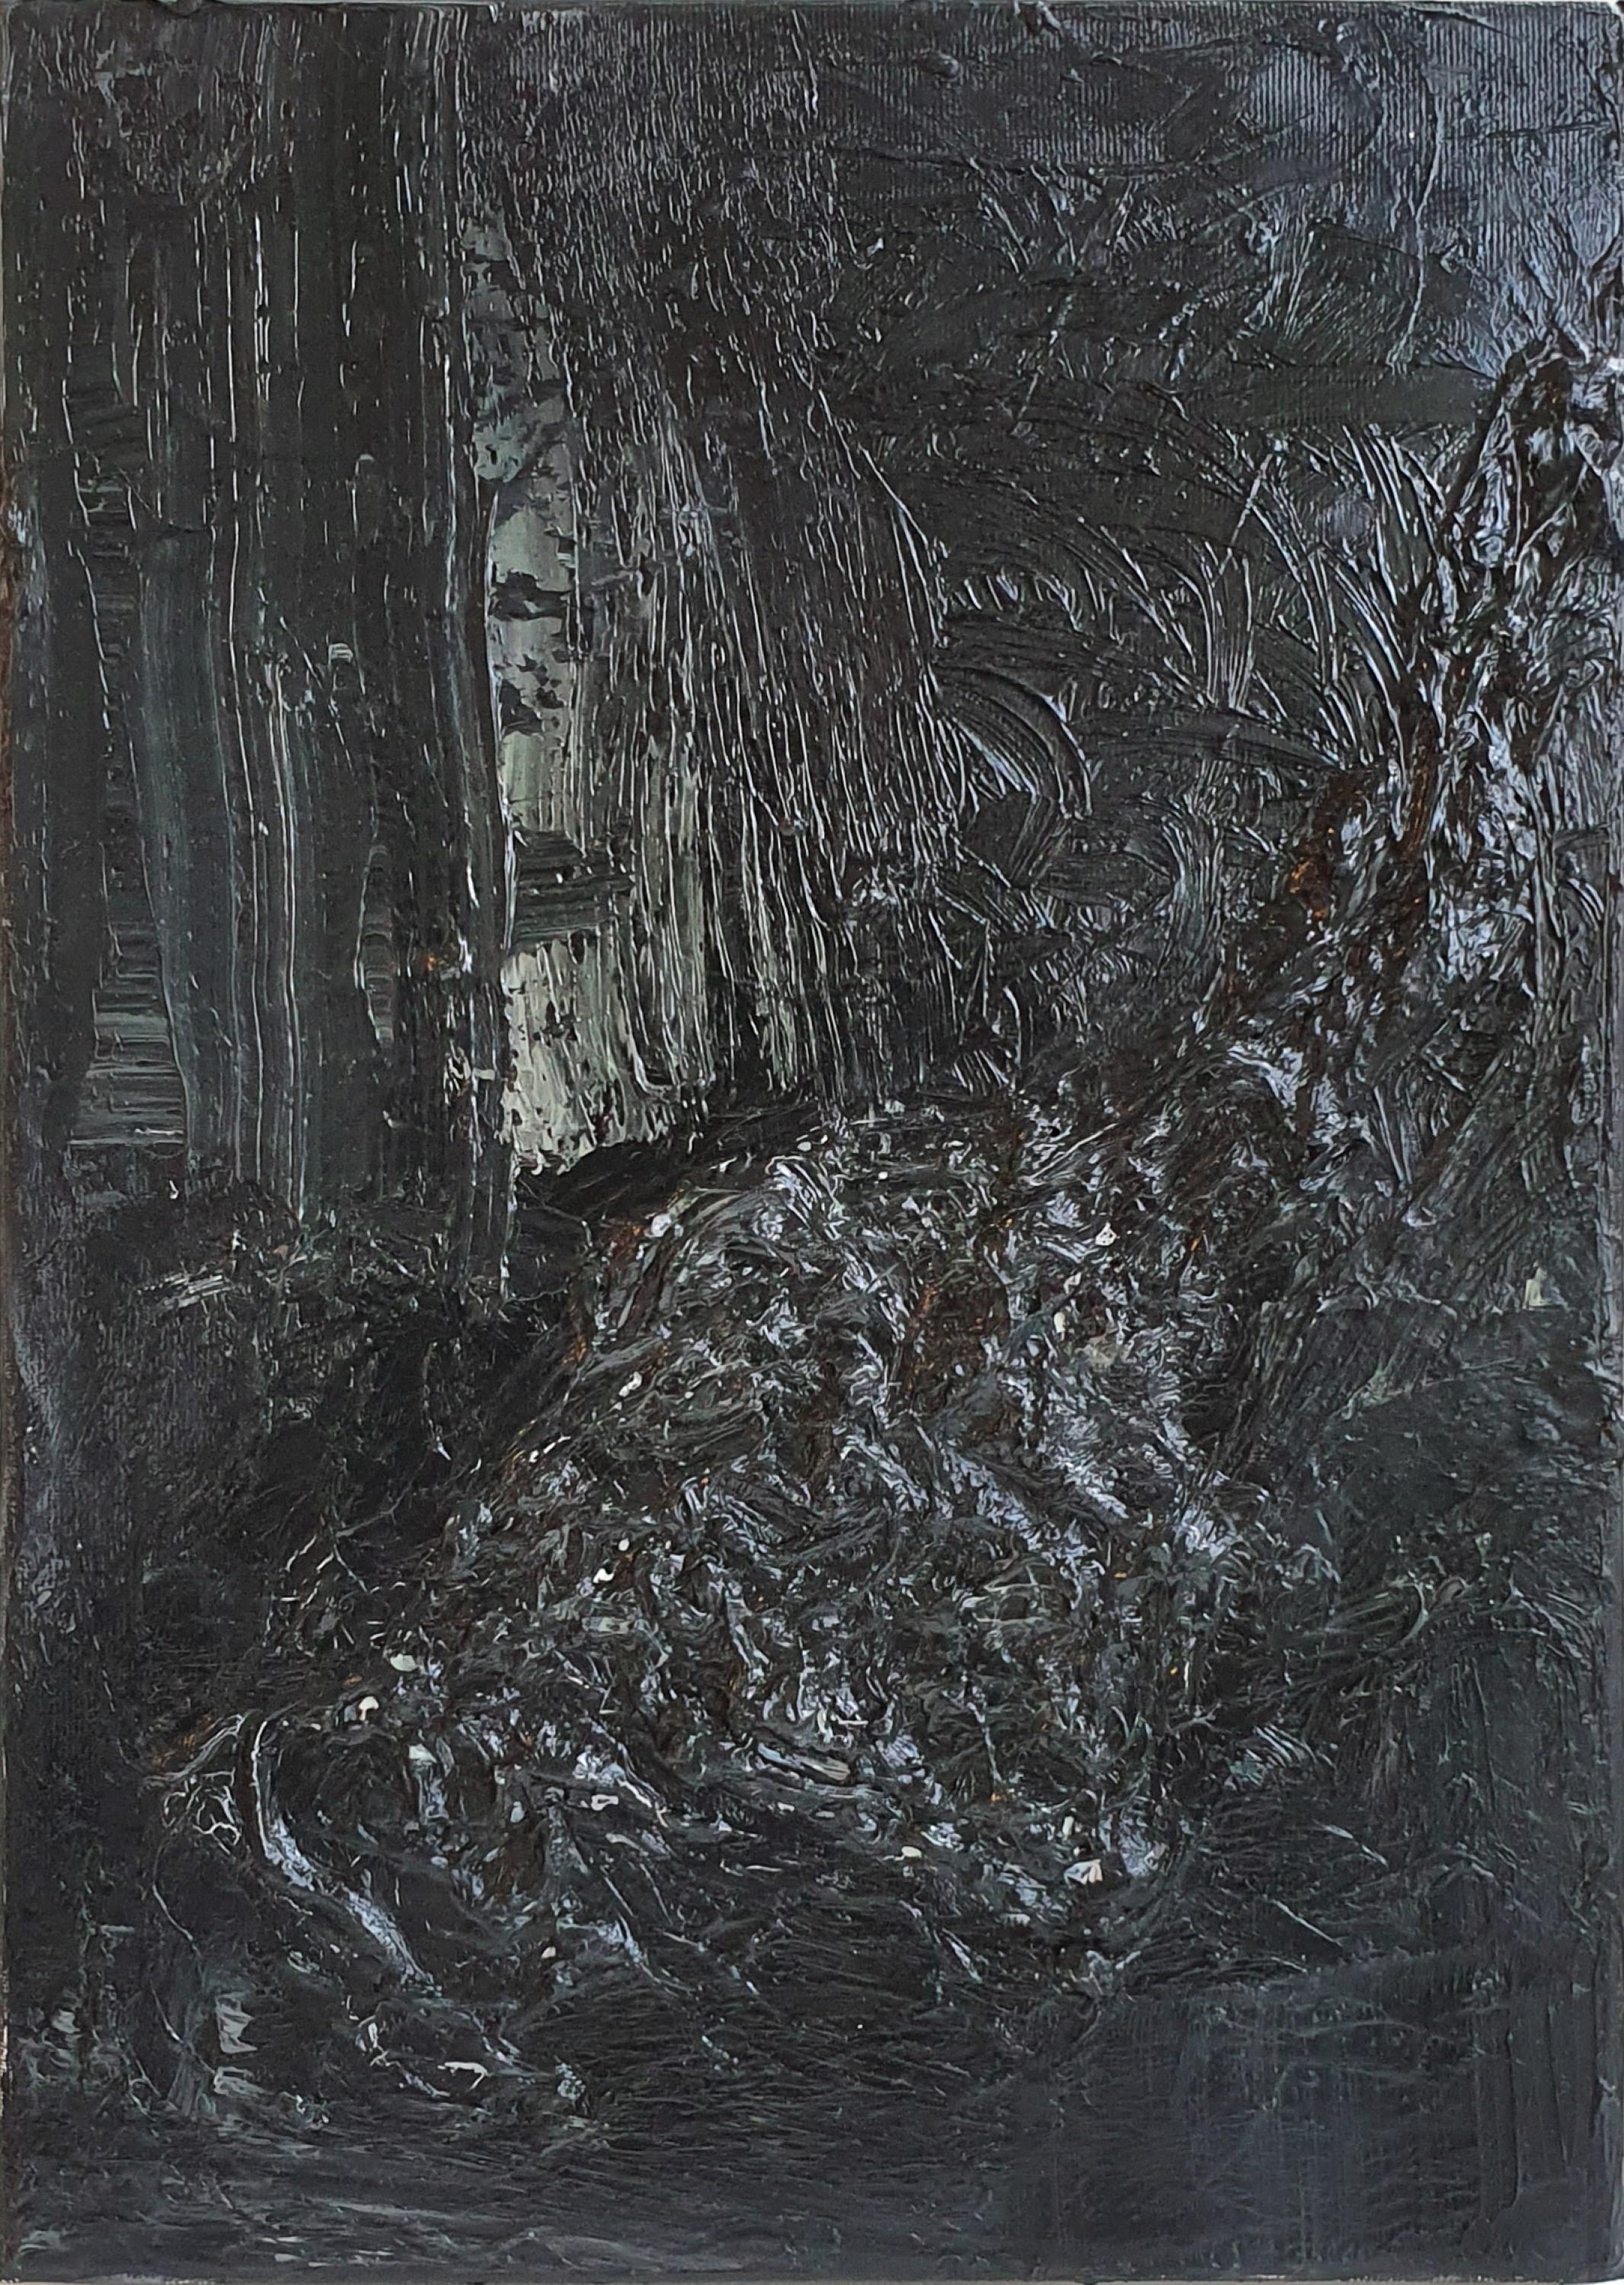 Abstract Painting Zsolt Berszán - Sans titre 03 - Peinture abstraite contemporaine, noir, monochrome, organique